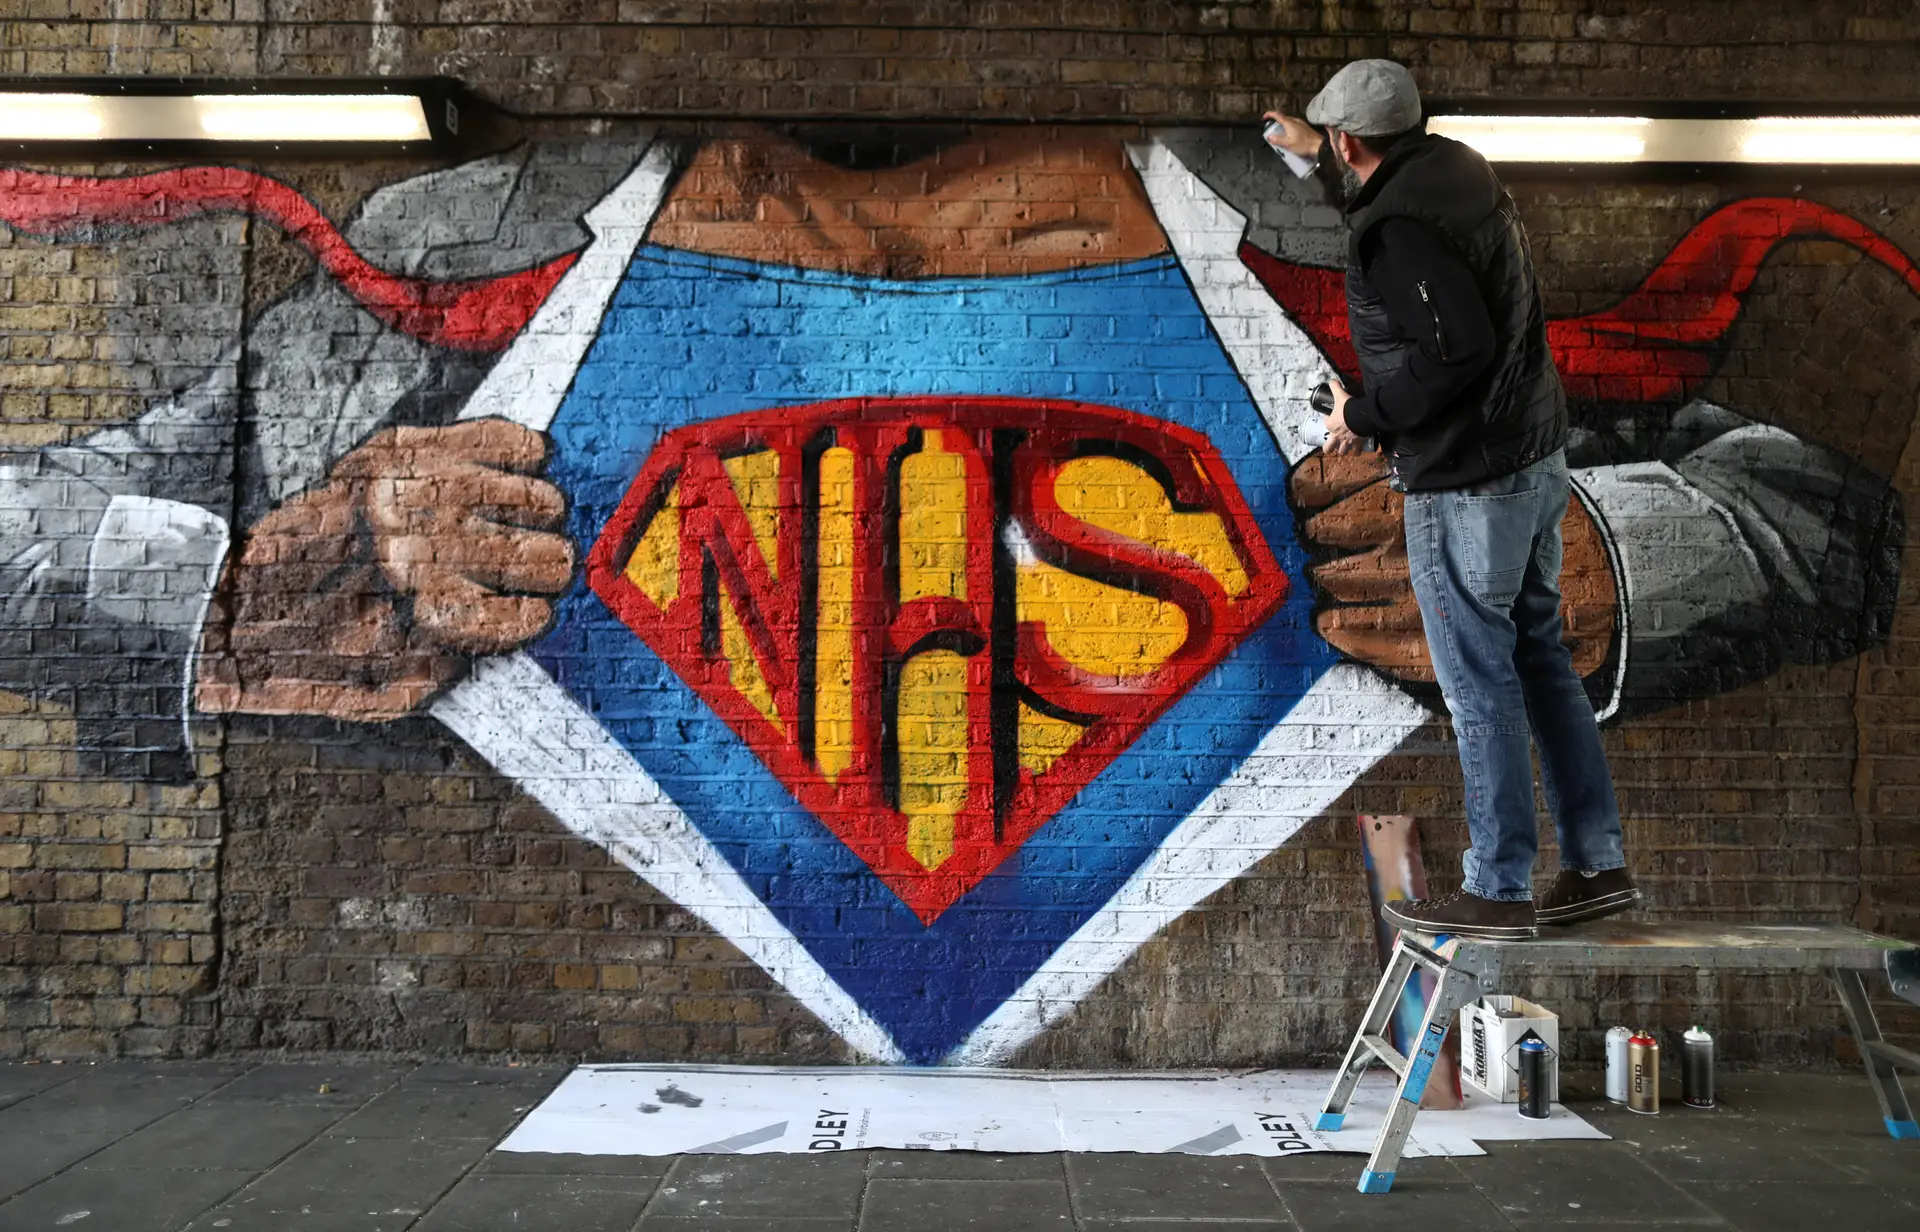 Artista Lionel Stanhope pinta um mural em Londres em homenagem aos profissionais do Serviço Nacional de Saúde britânico, NHS na sigla inglesa.